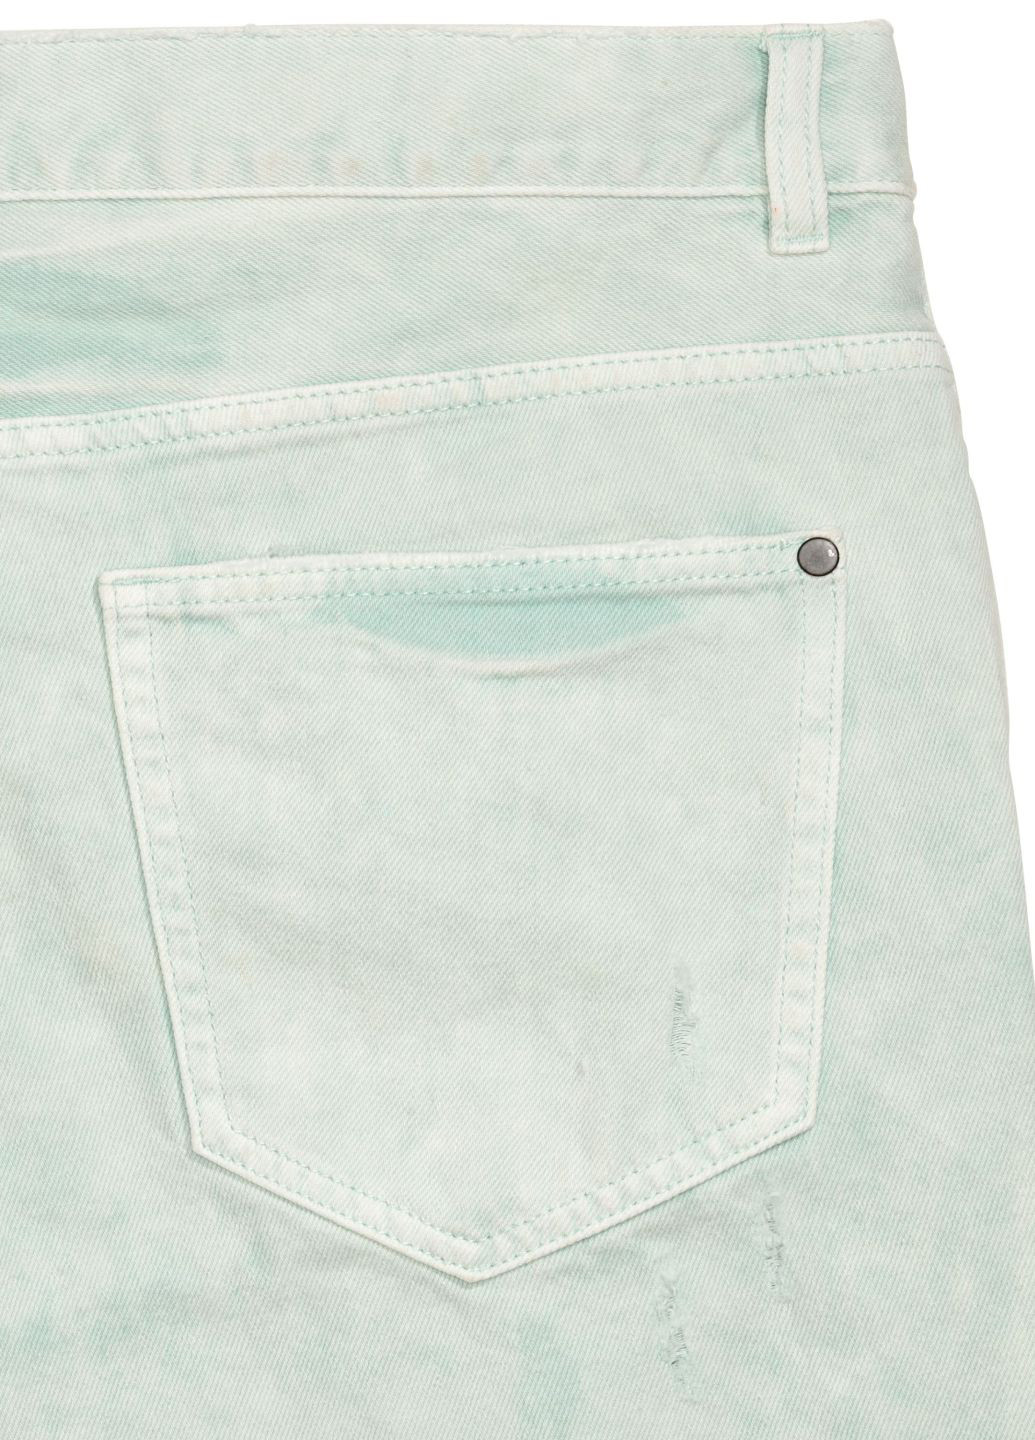 Шорты H&M однотонные мятные джинсовые хлопок